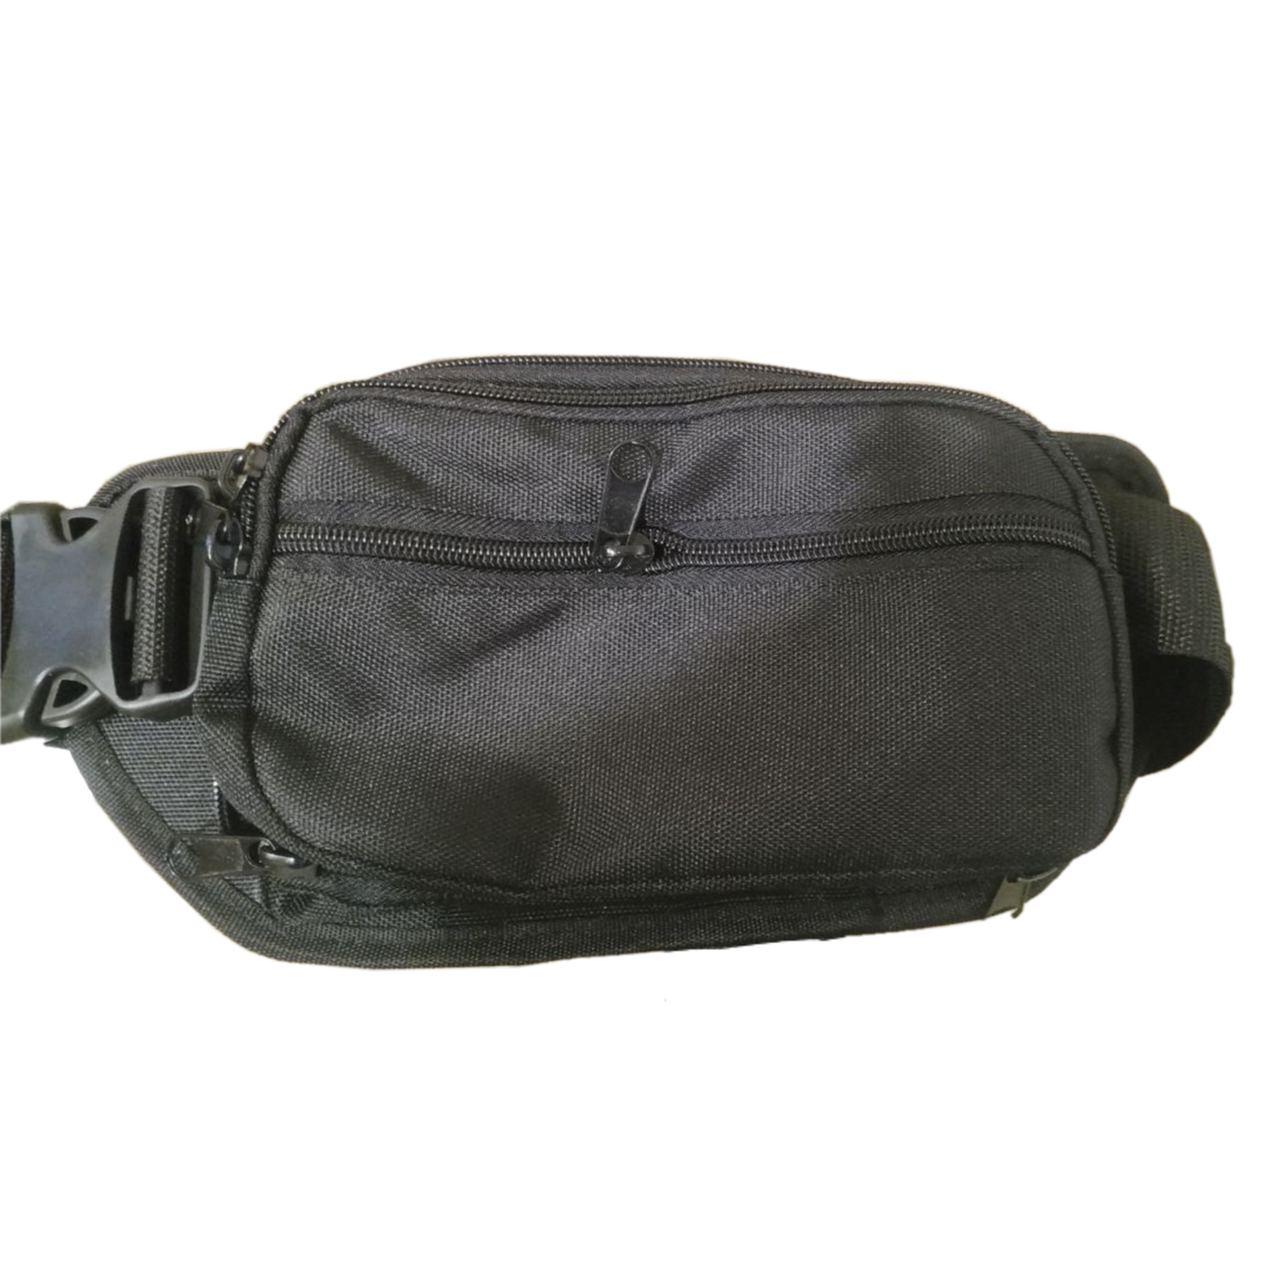 Поясная сумка для скрытого ношения пистолета с отделением для магазина Black